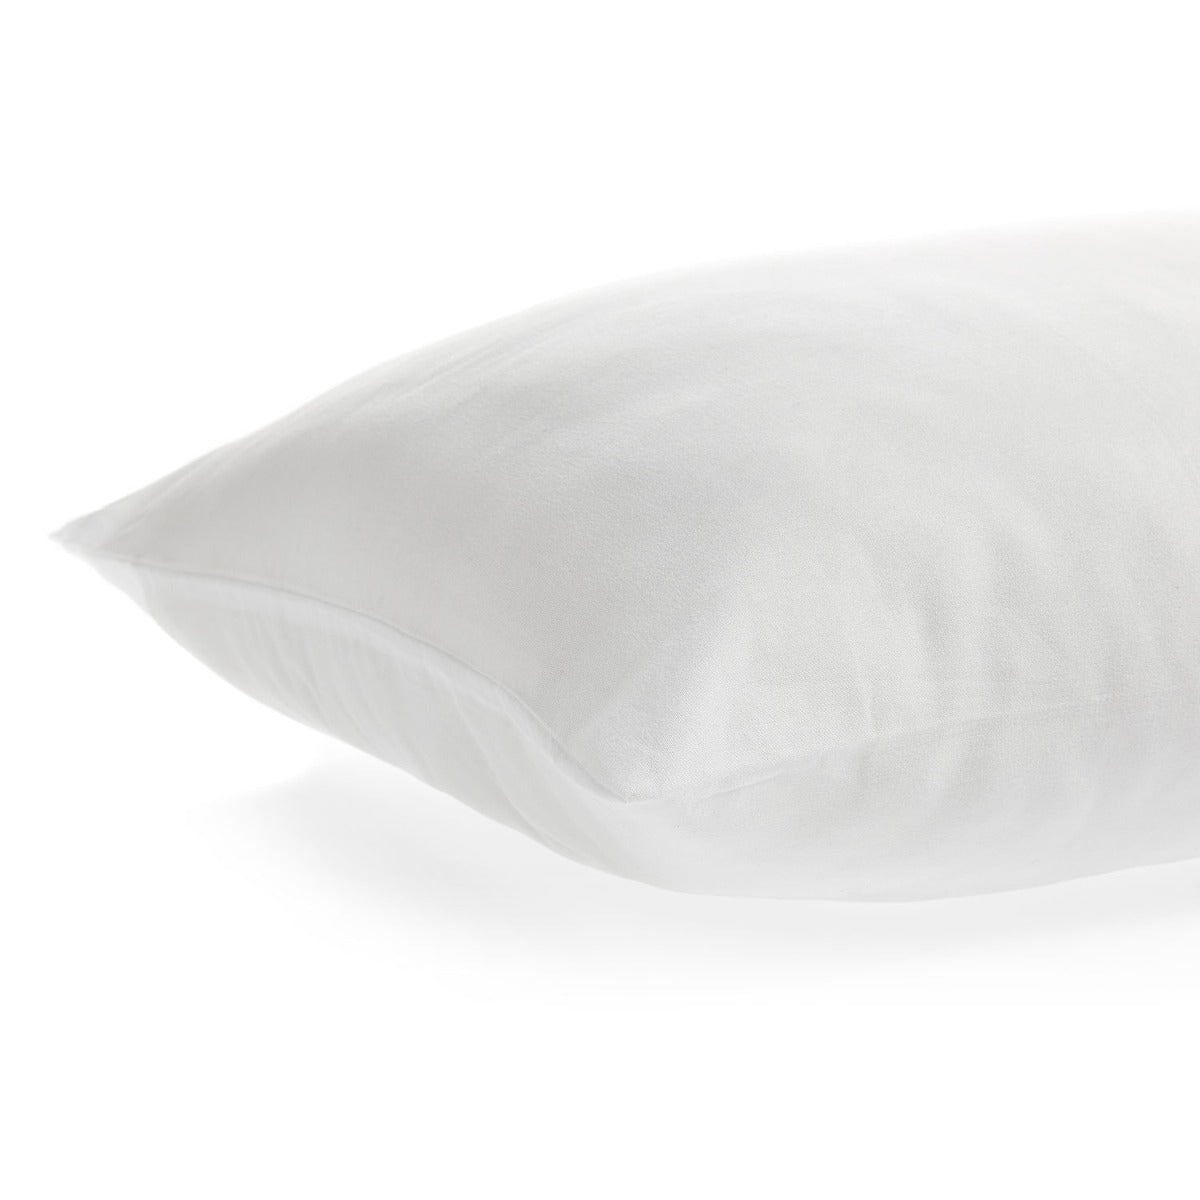 Anti-Allergy Pillow Pair - Medium Support